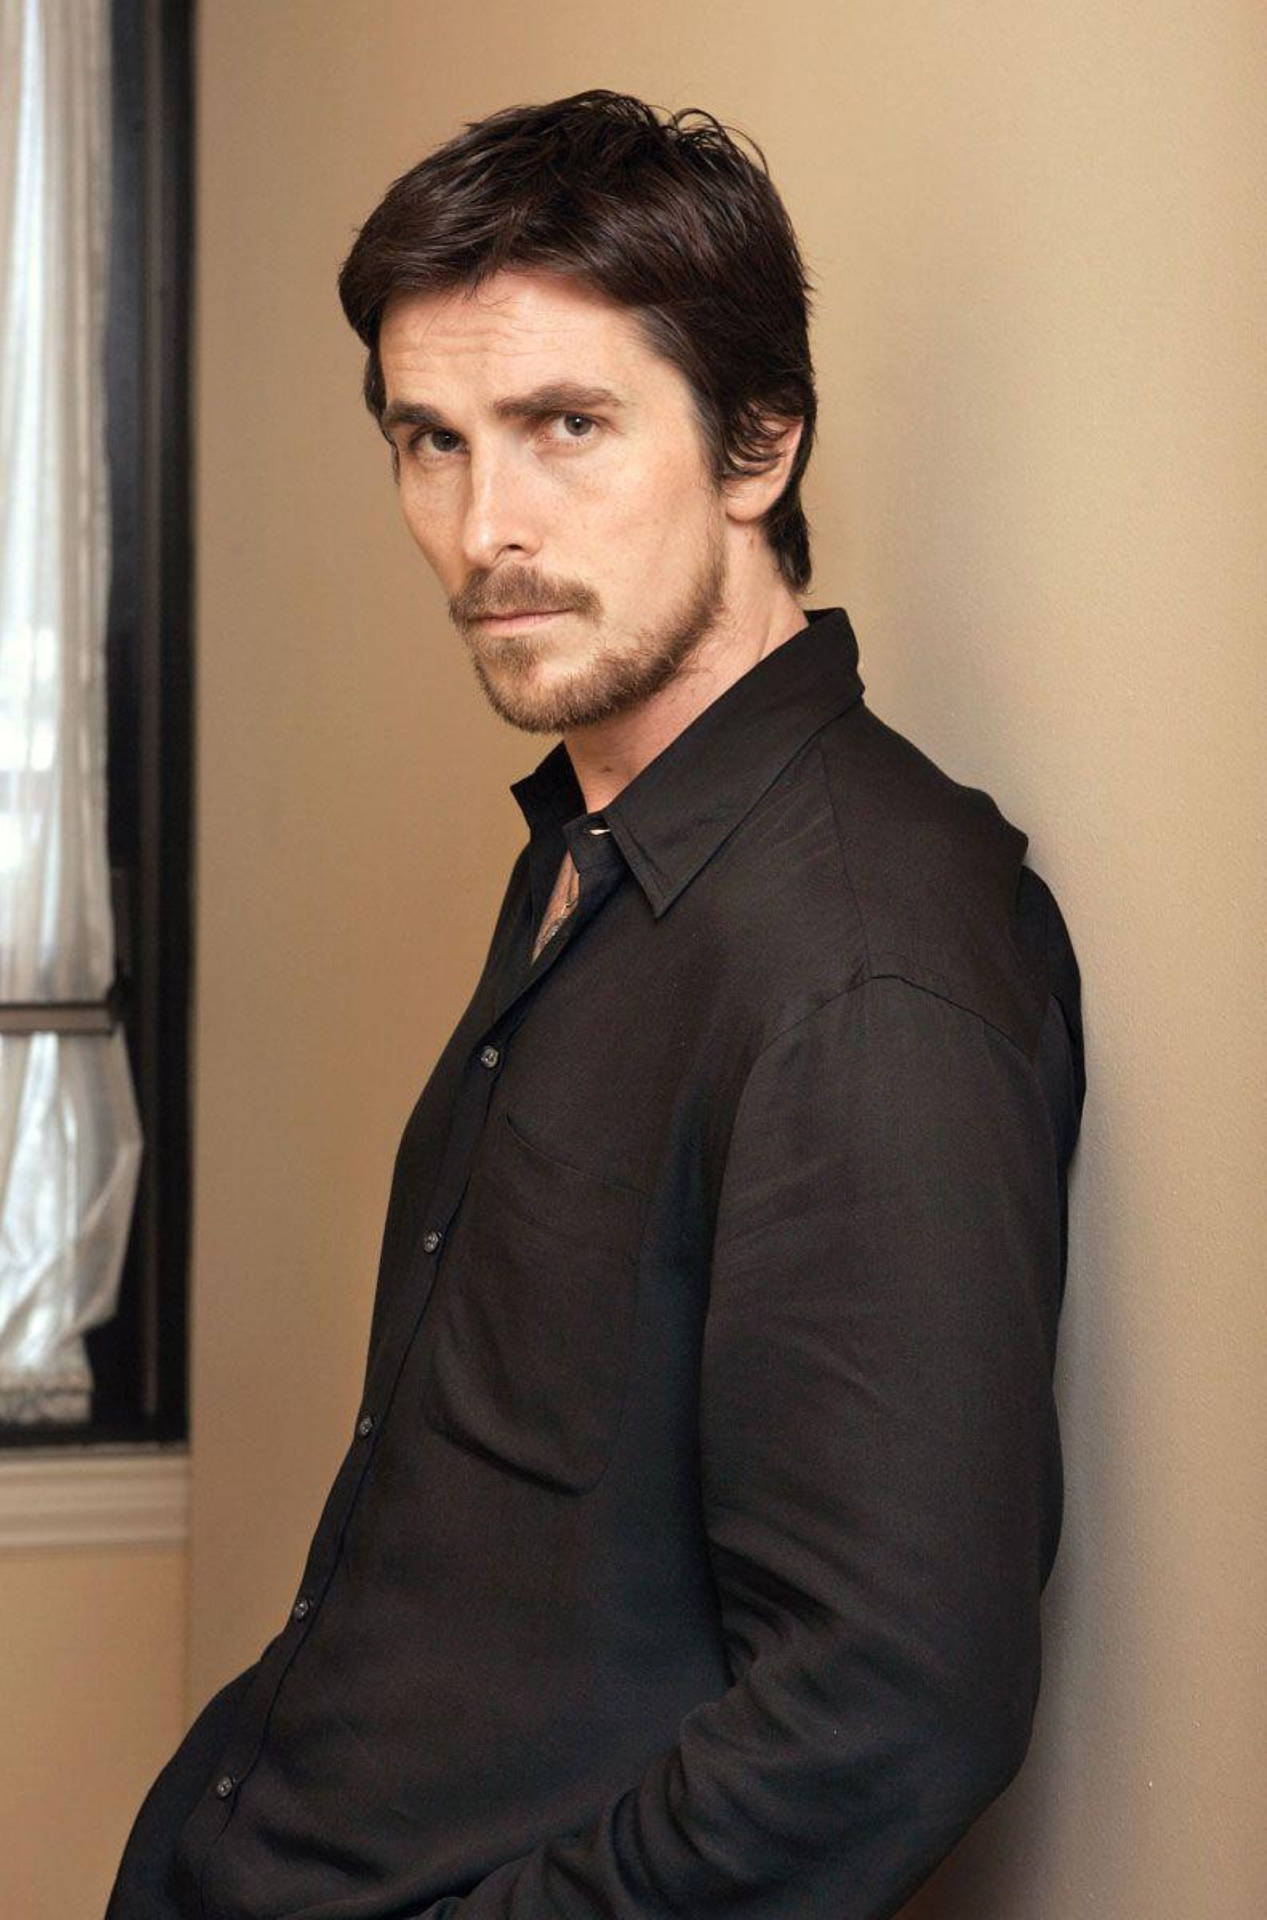 Christian Bale Portrait Picture